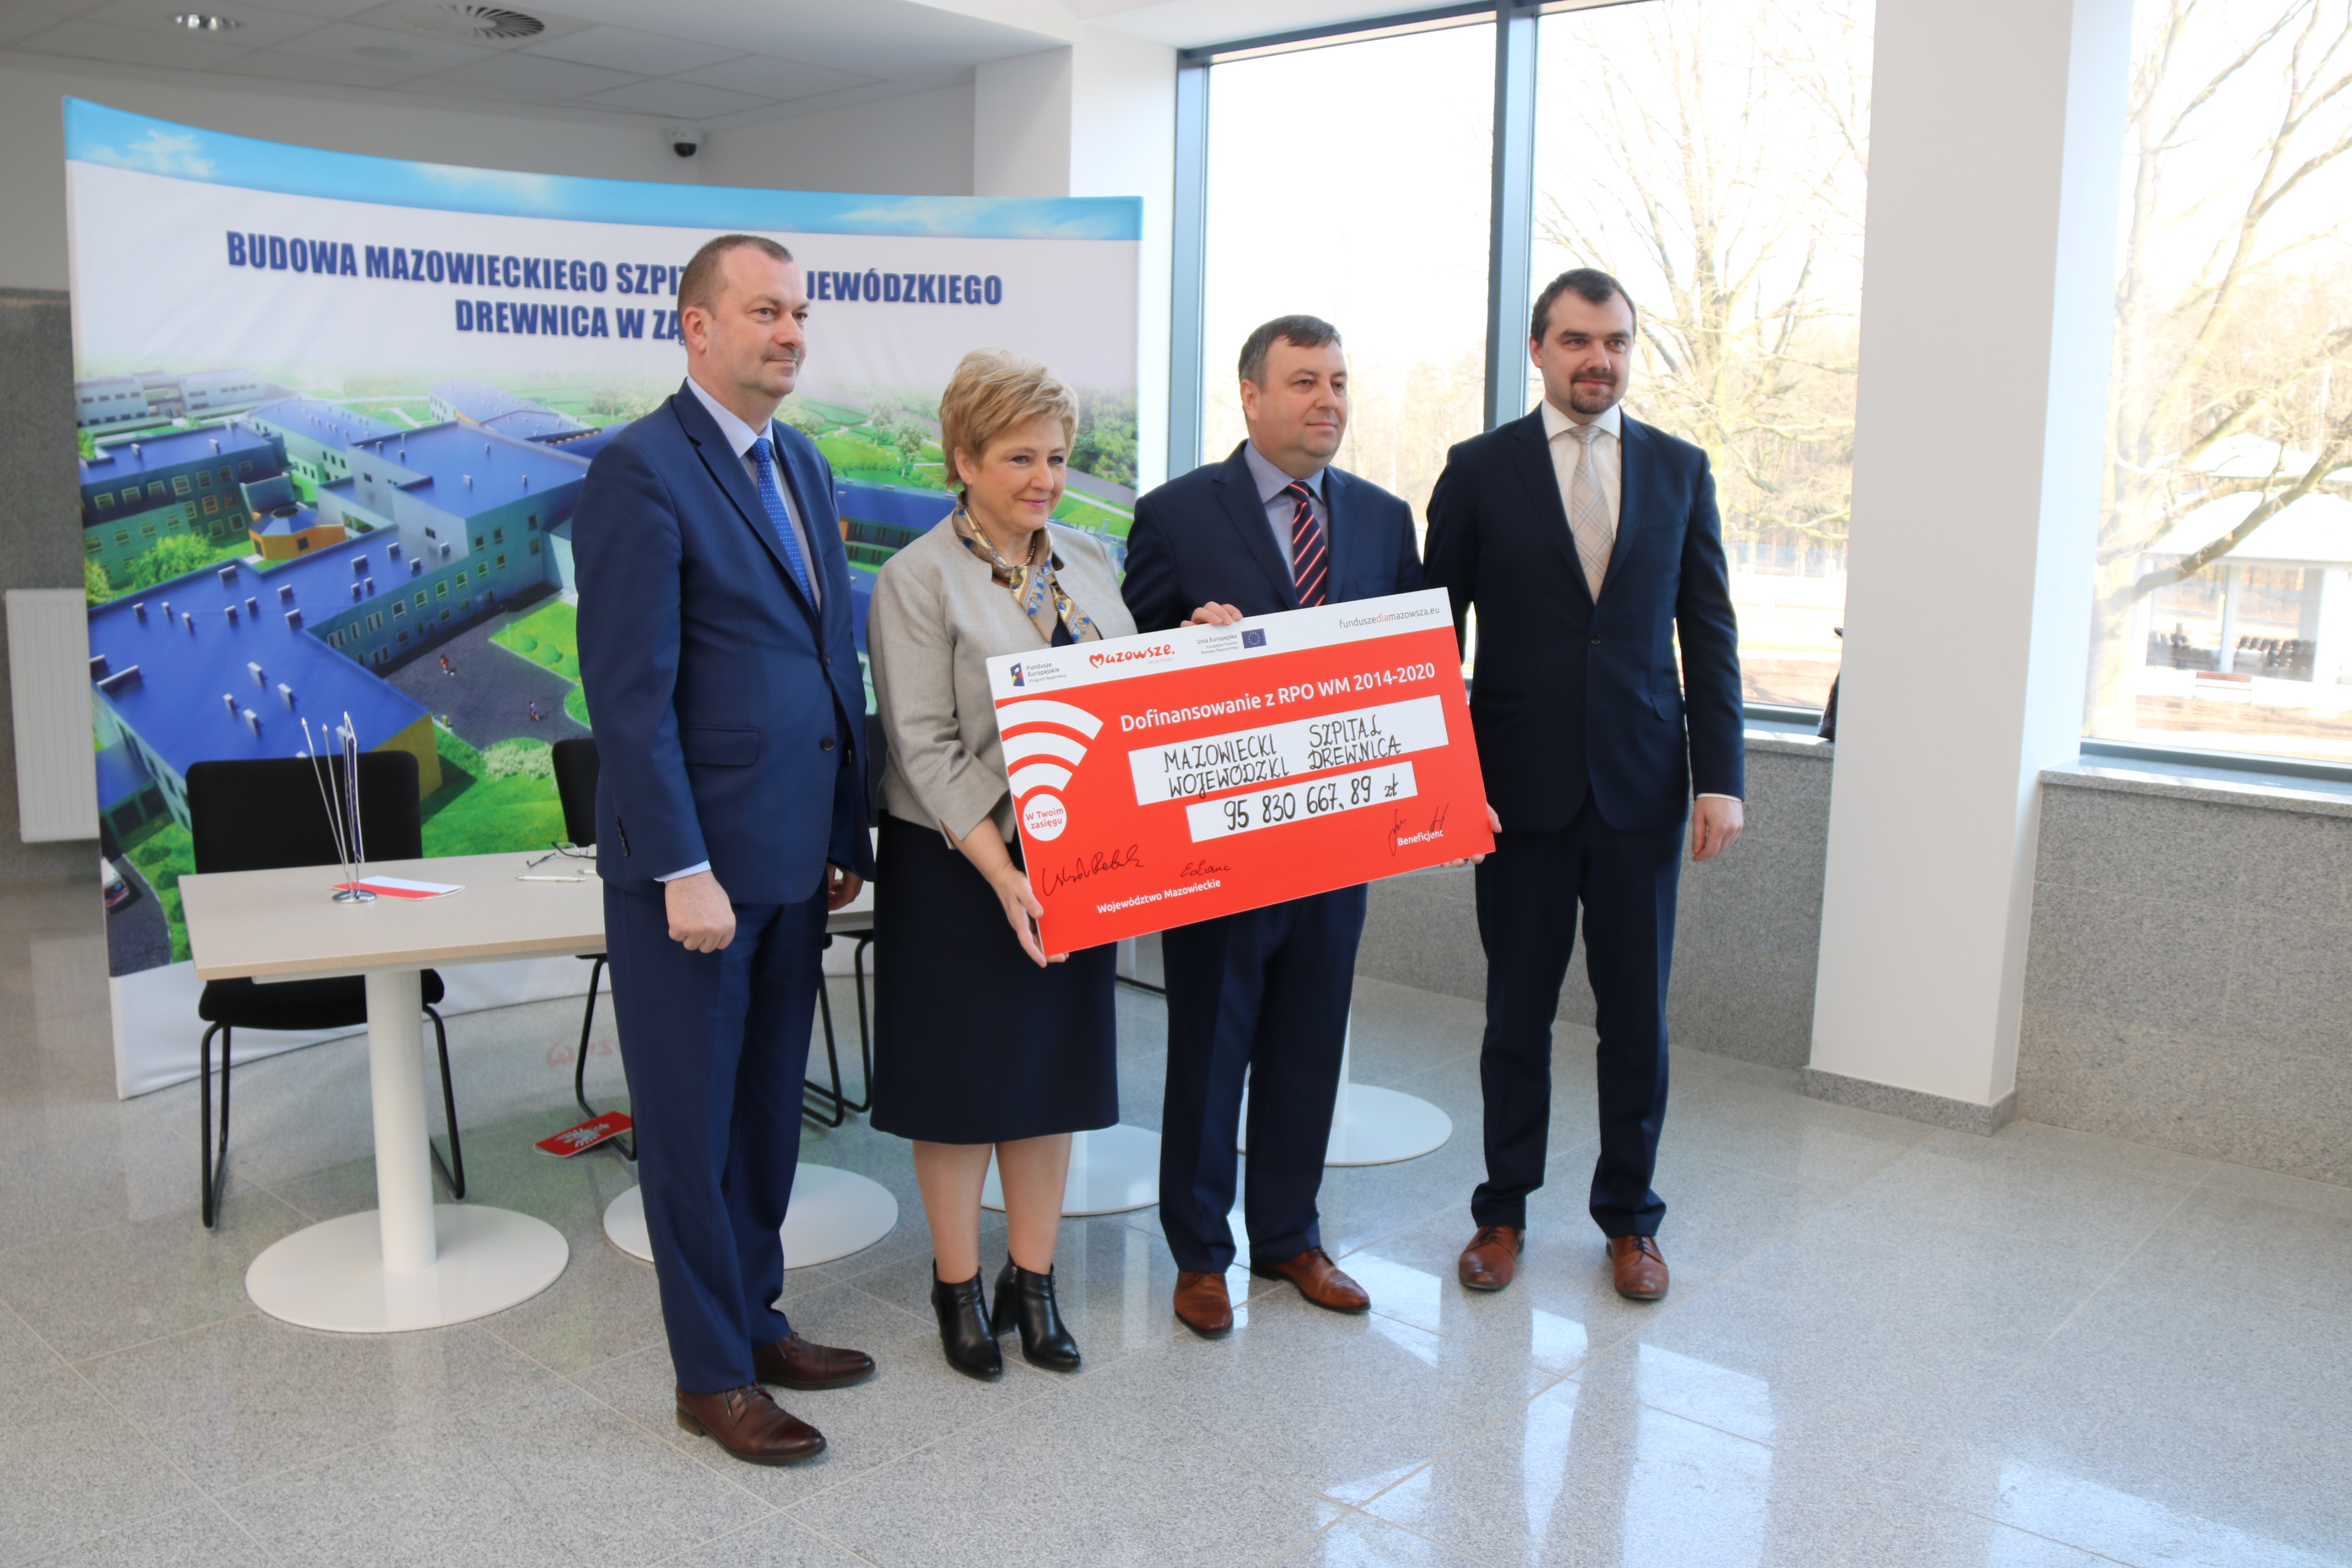 Uroczyste podpisanie umowy na dofinansowanie Mazowieckiego Szpitala Wojewódzkiego Drewnica